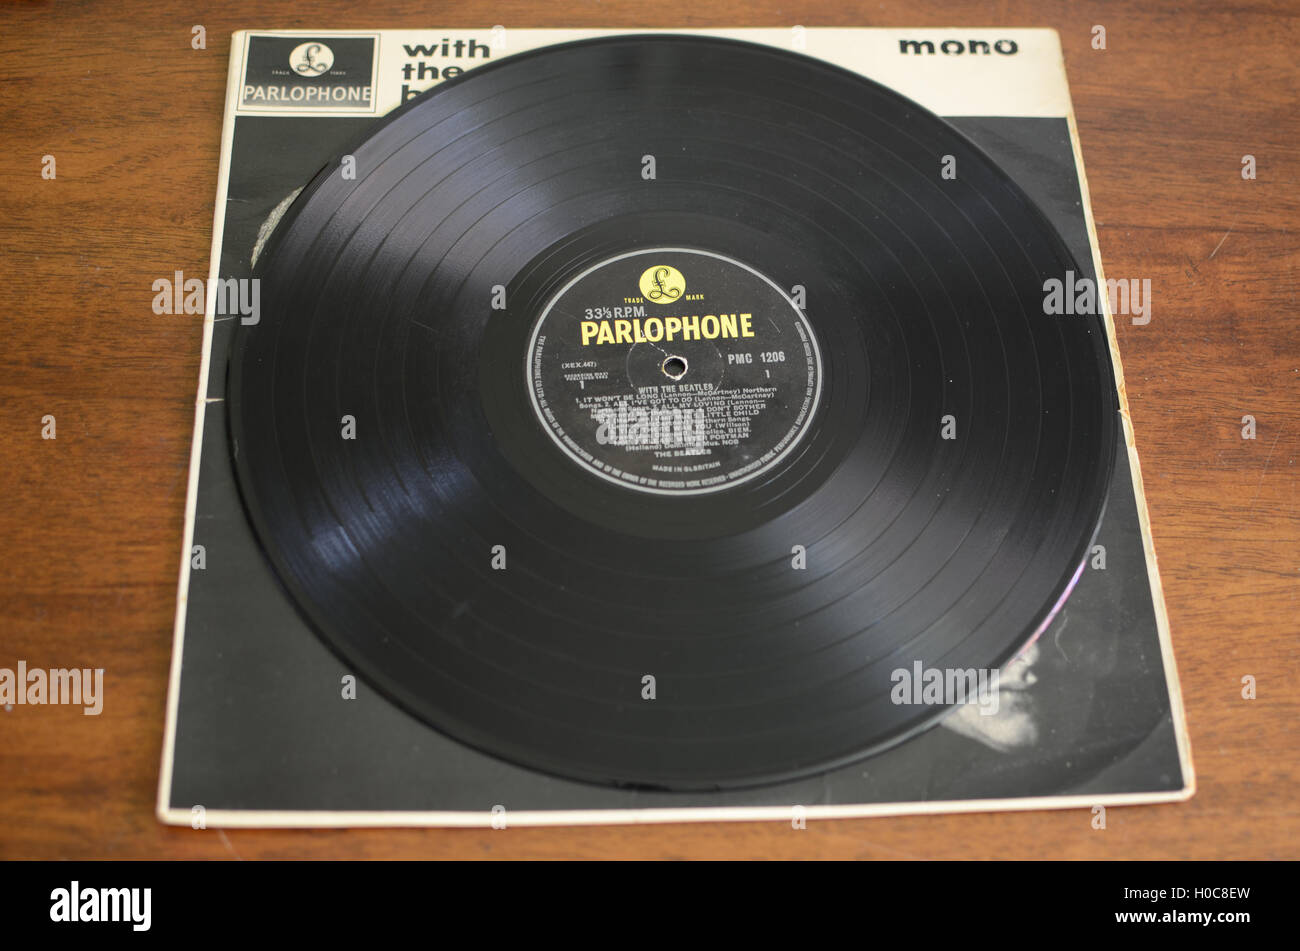 With The Beatles, original mono vinyl album, 1963, yellow Parlophone Stock Photo